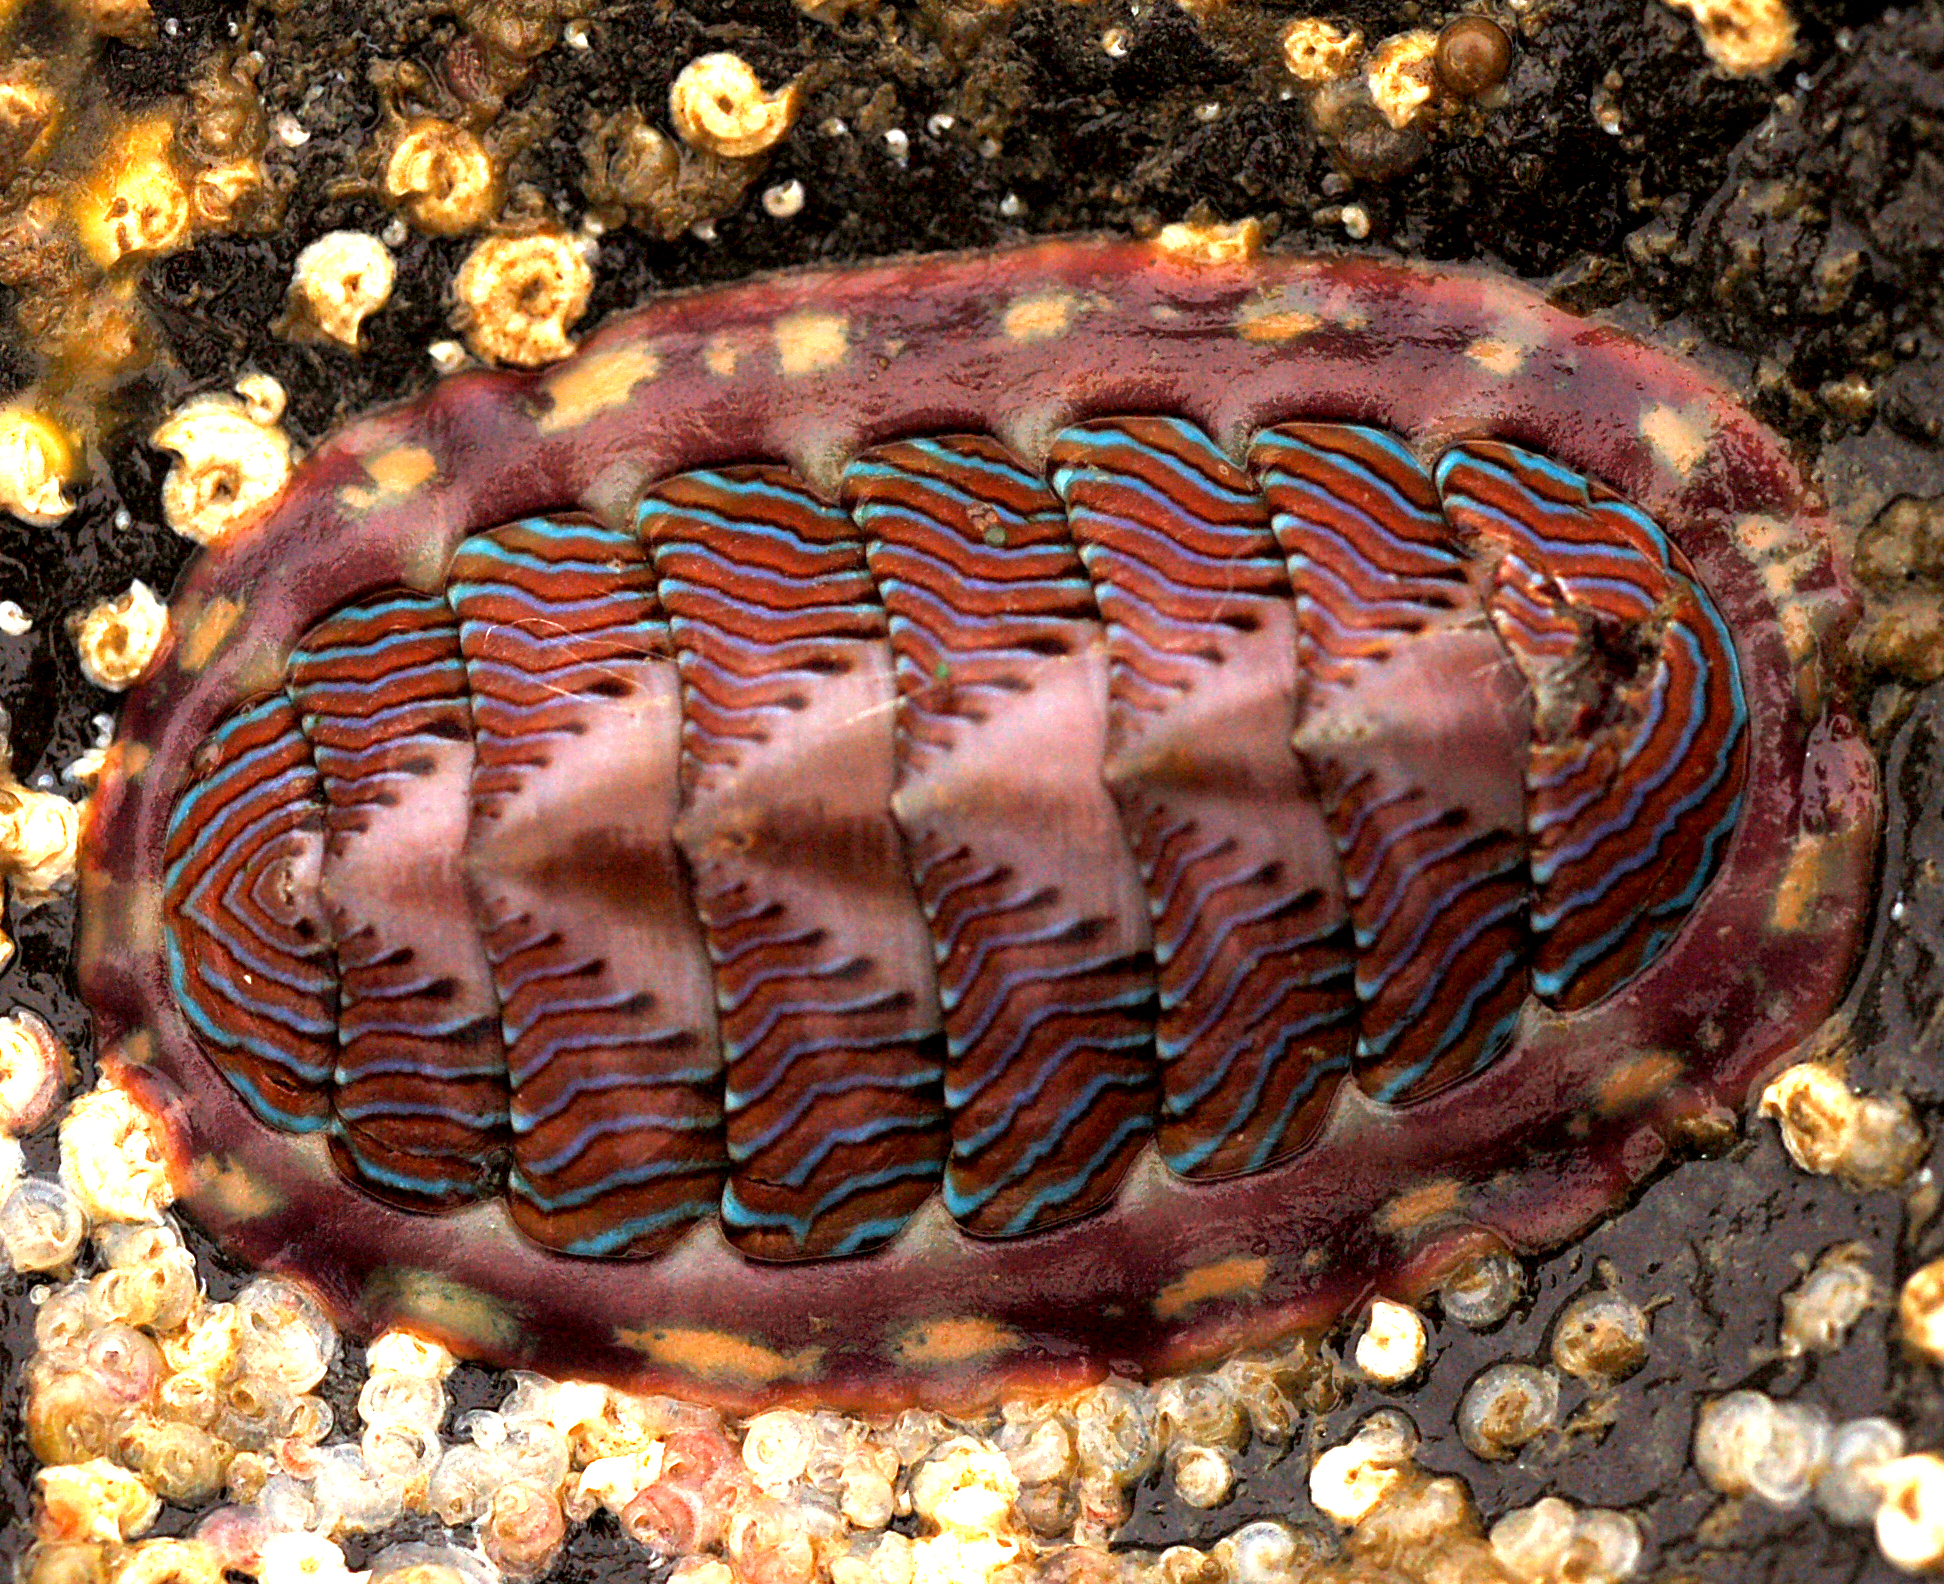 40 Koleksi Contoh Gambar Hewan Mollusca Gratis Terbaik